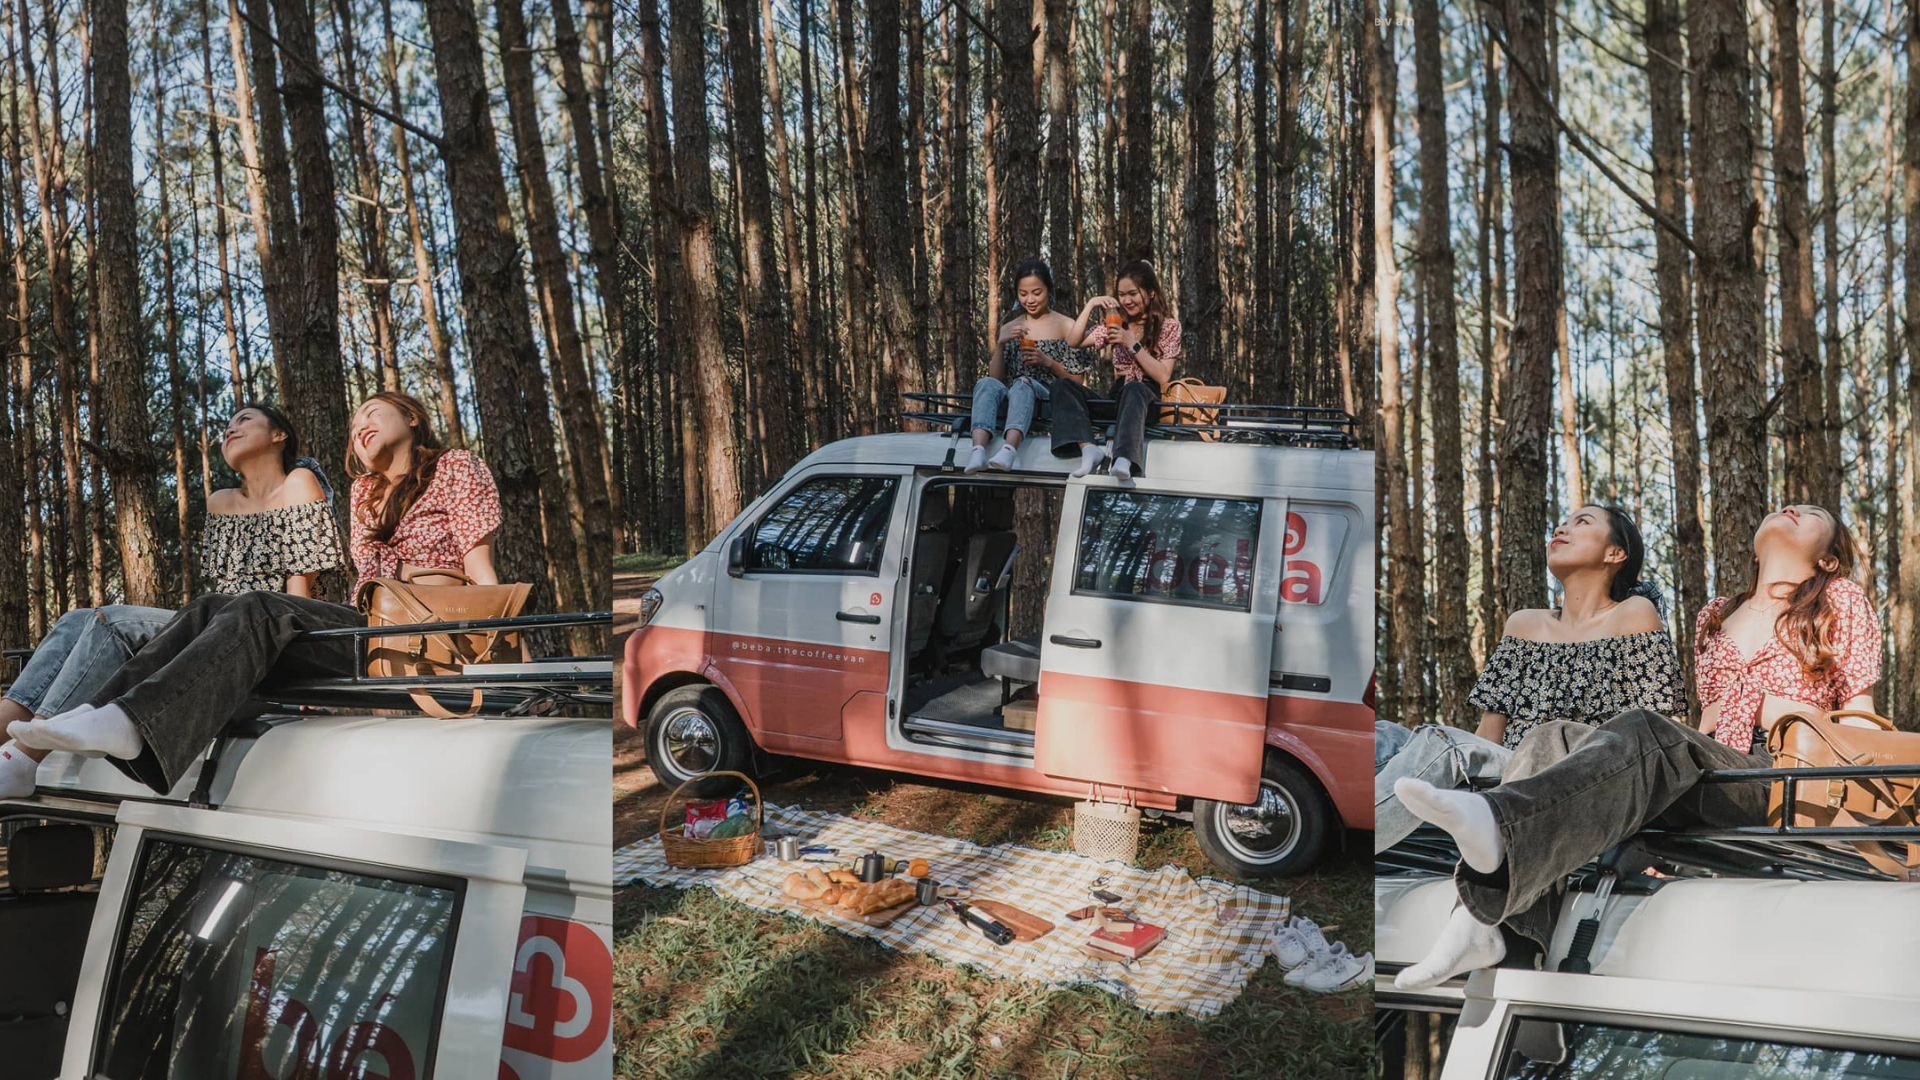 The coffee van becomes an outdoor studio